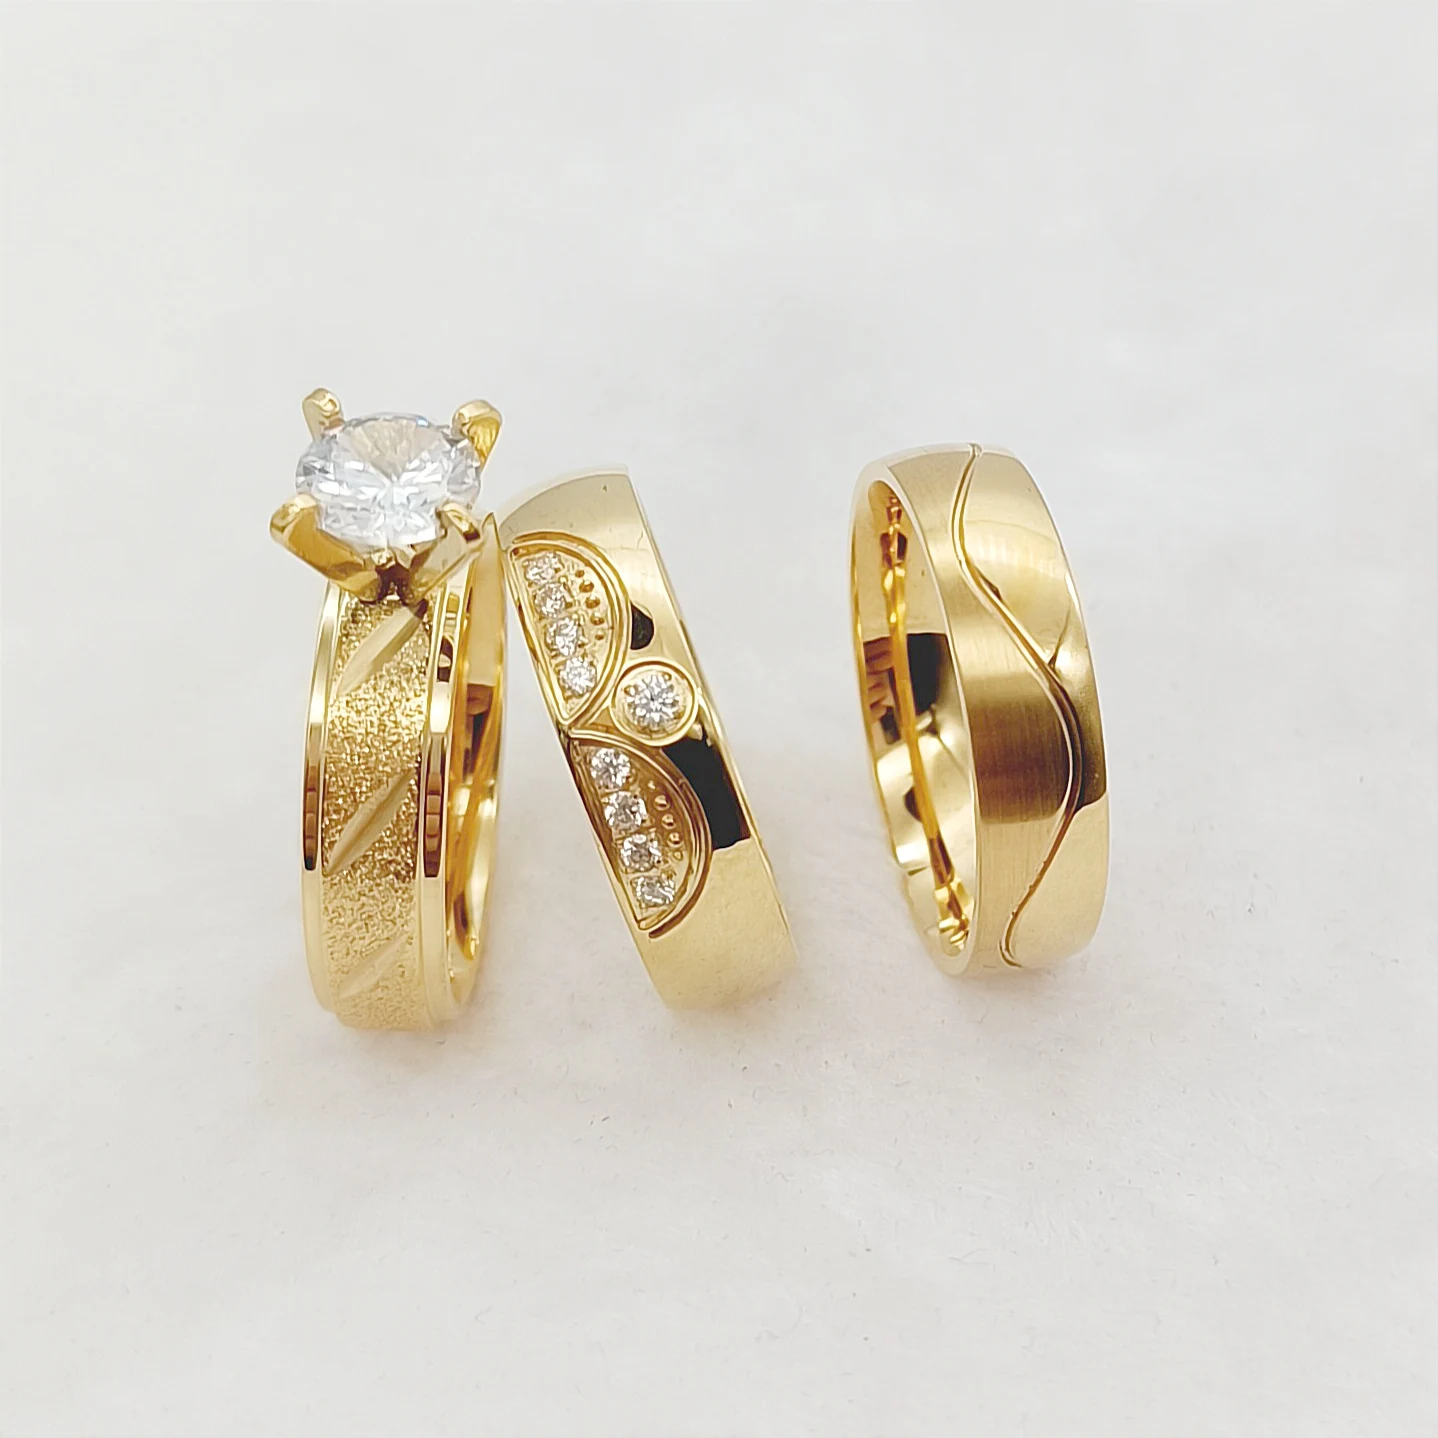 Yellow Gold Wedding Band - Leaf Bridal Ring ADLR574G